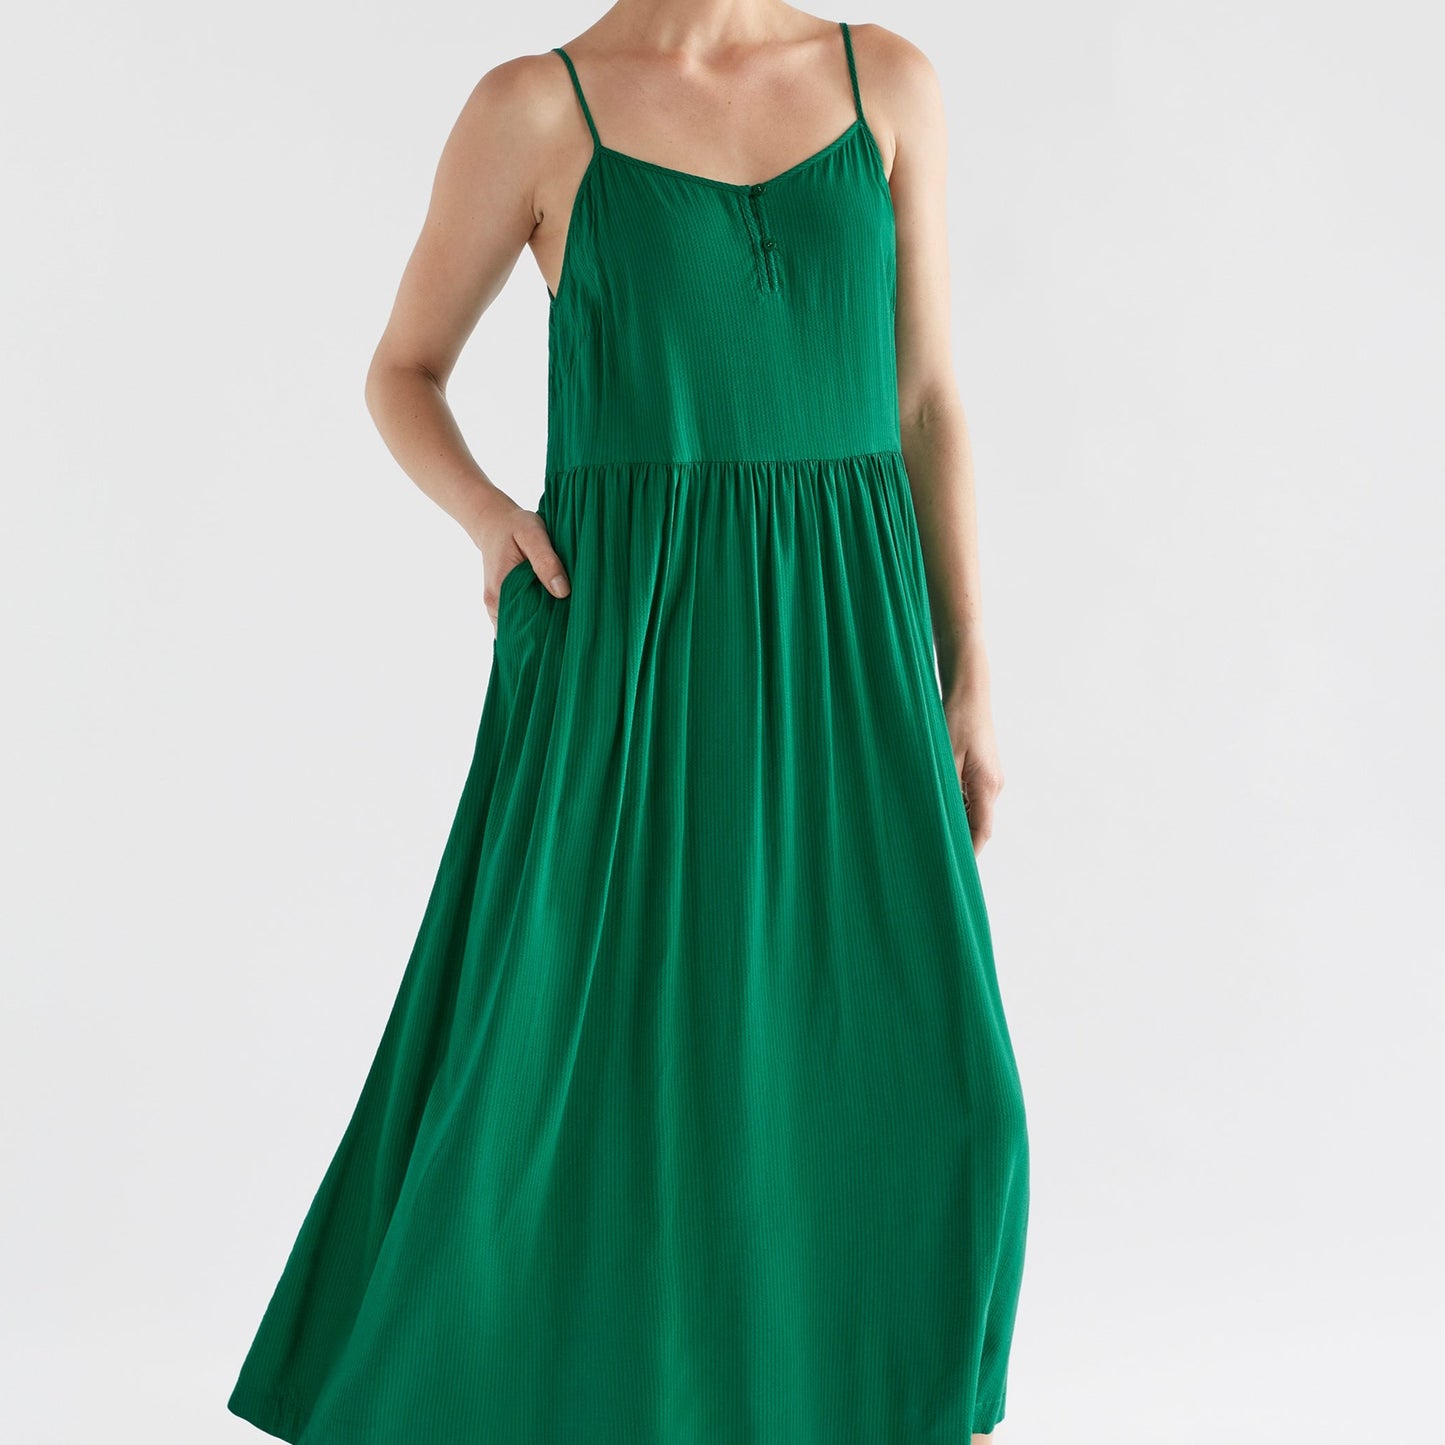 Linia Dress - Jewel Green